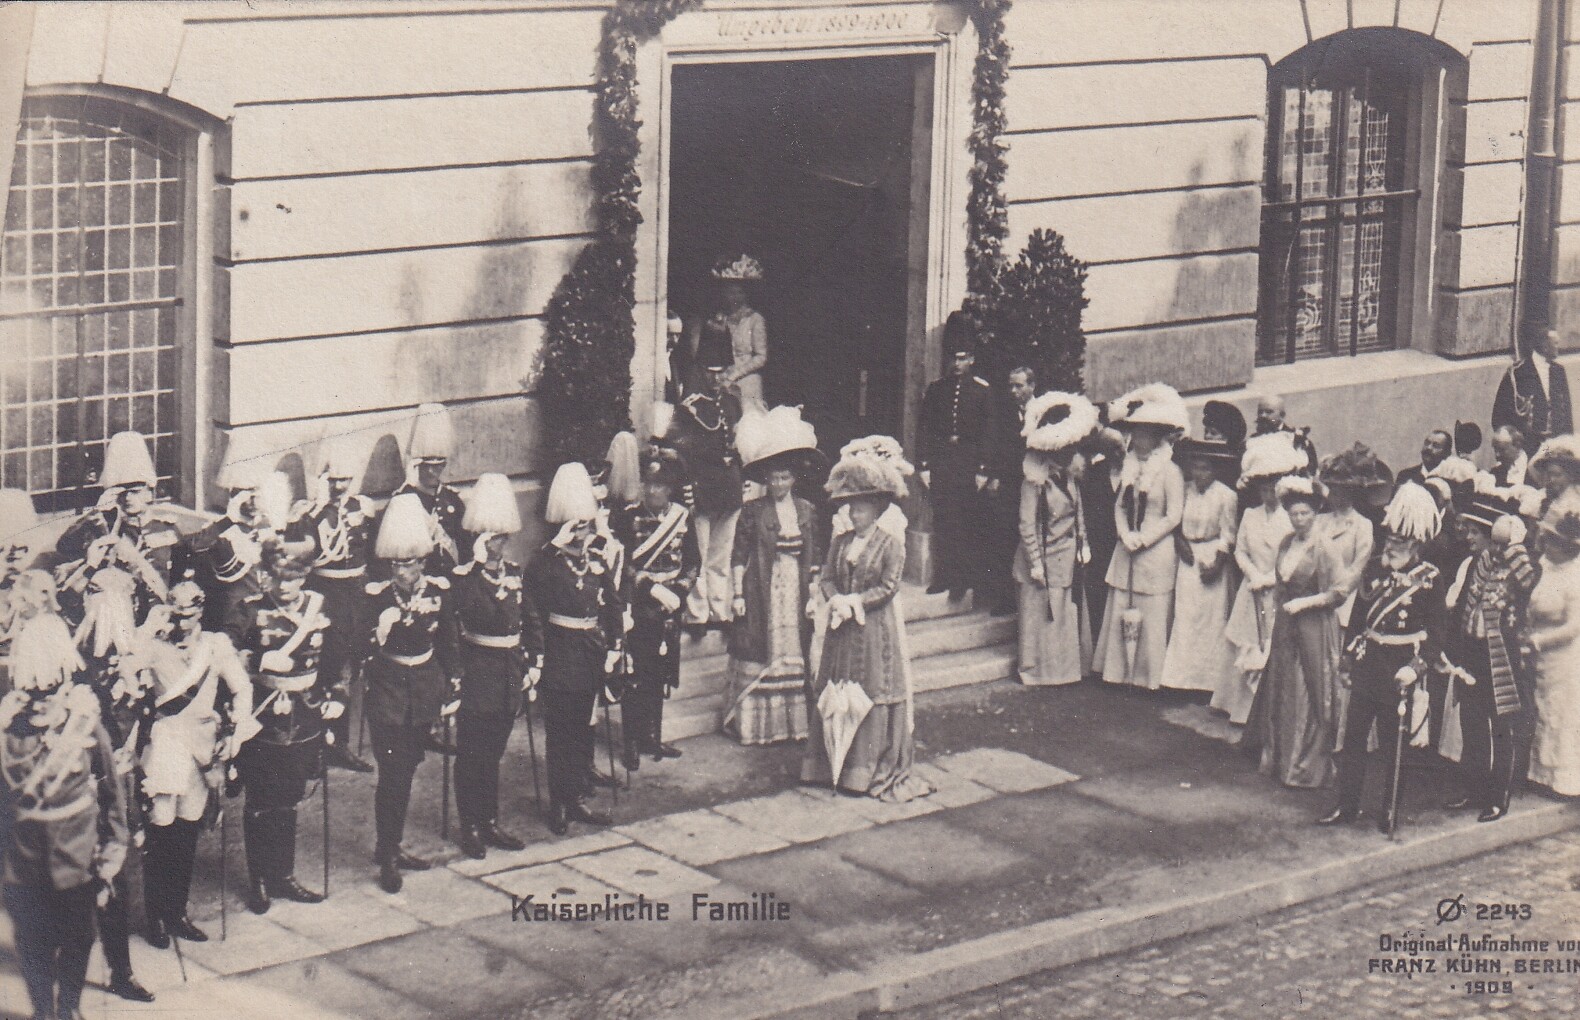 Bildpostkarte mit Foto einer Feierlichkeit in Anwesenheit der Kaiserfamilie, Juni 1909 (Schloß Wernigerode GmbH RR-F)